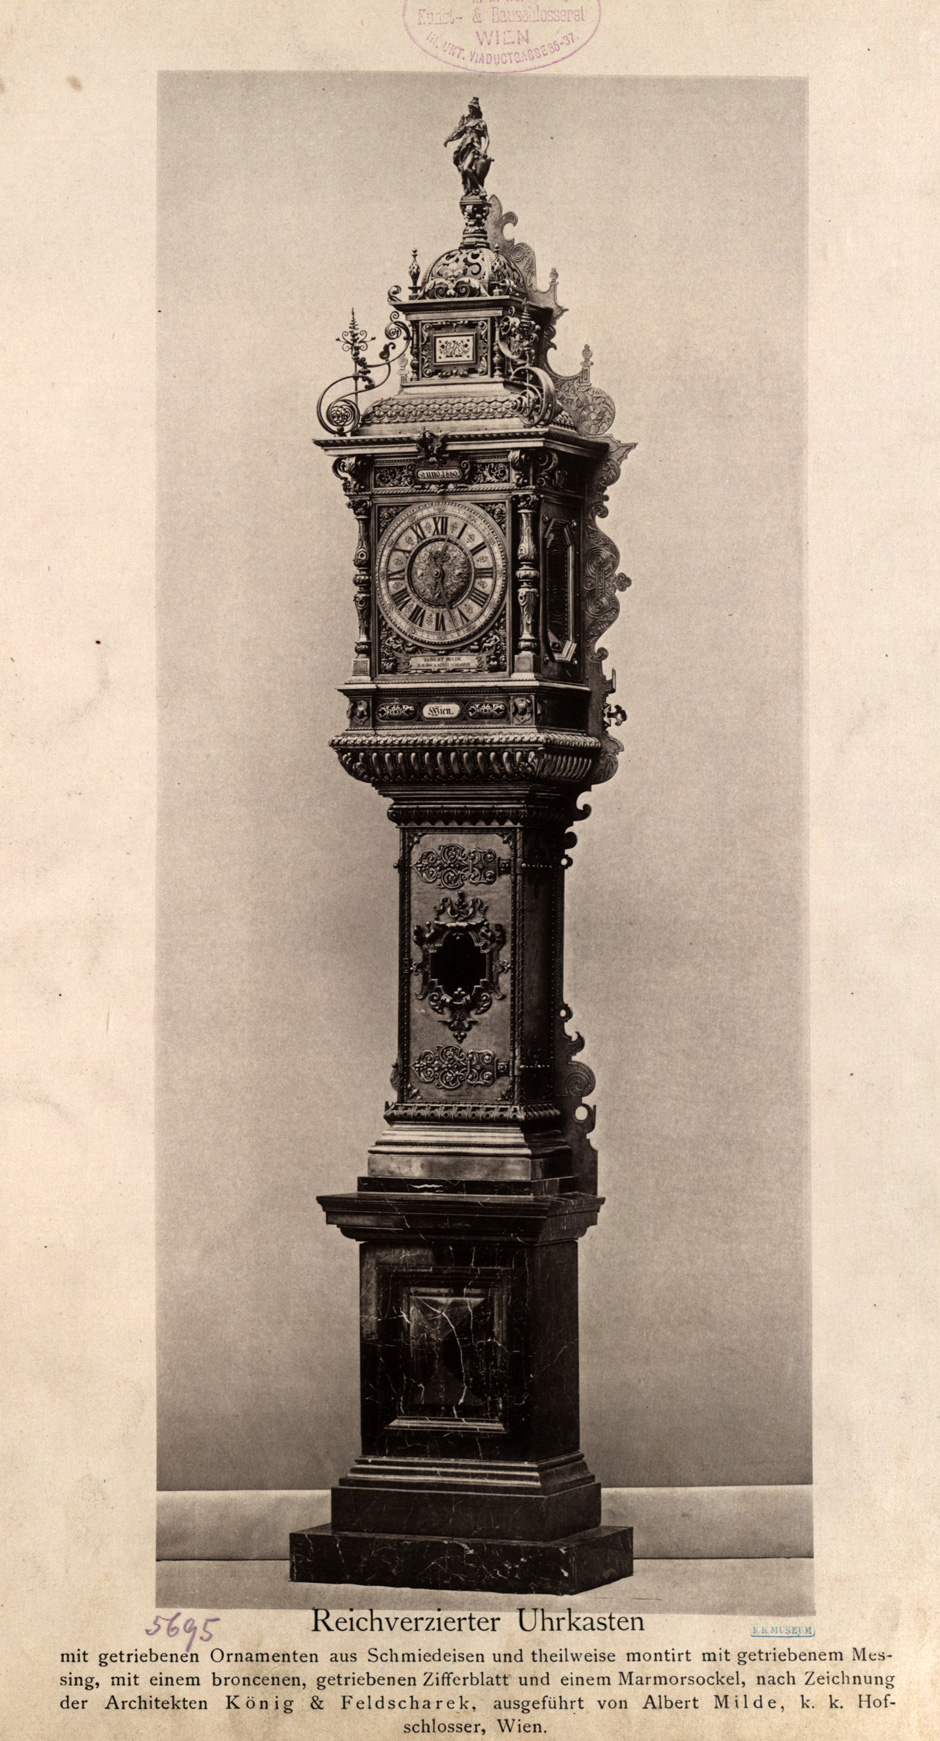 Reichverzierter Uhrenkasten mit getriebenen Ornamenten aus Schmiedeeisen und teilweise montiert mit getriebenem Messing, mit einem bronzenen getriebenen Ziffernblatt und einem Marmorblock